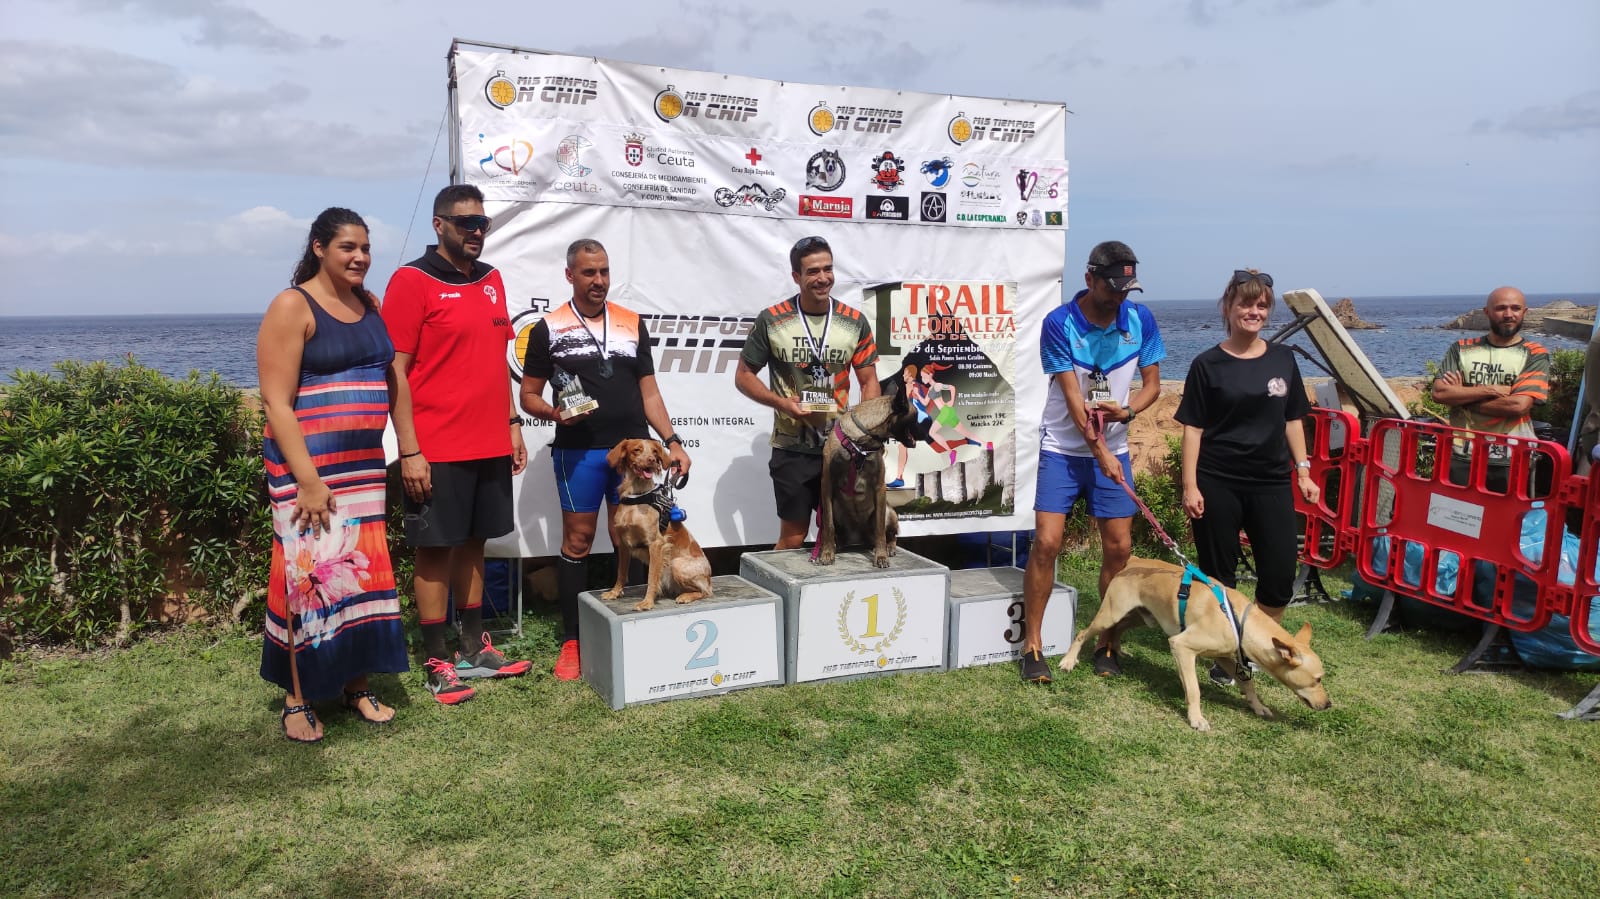 Más de 250 participantes se han dado cita en la novedosa prueba I Trail La Fortaleza acompañados de sus mascotas